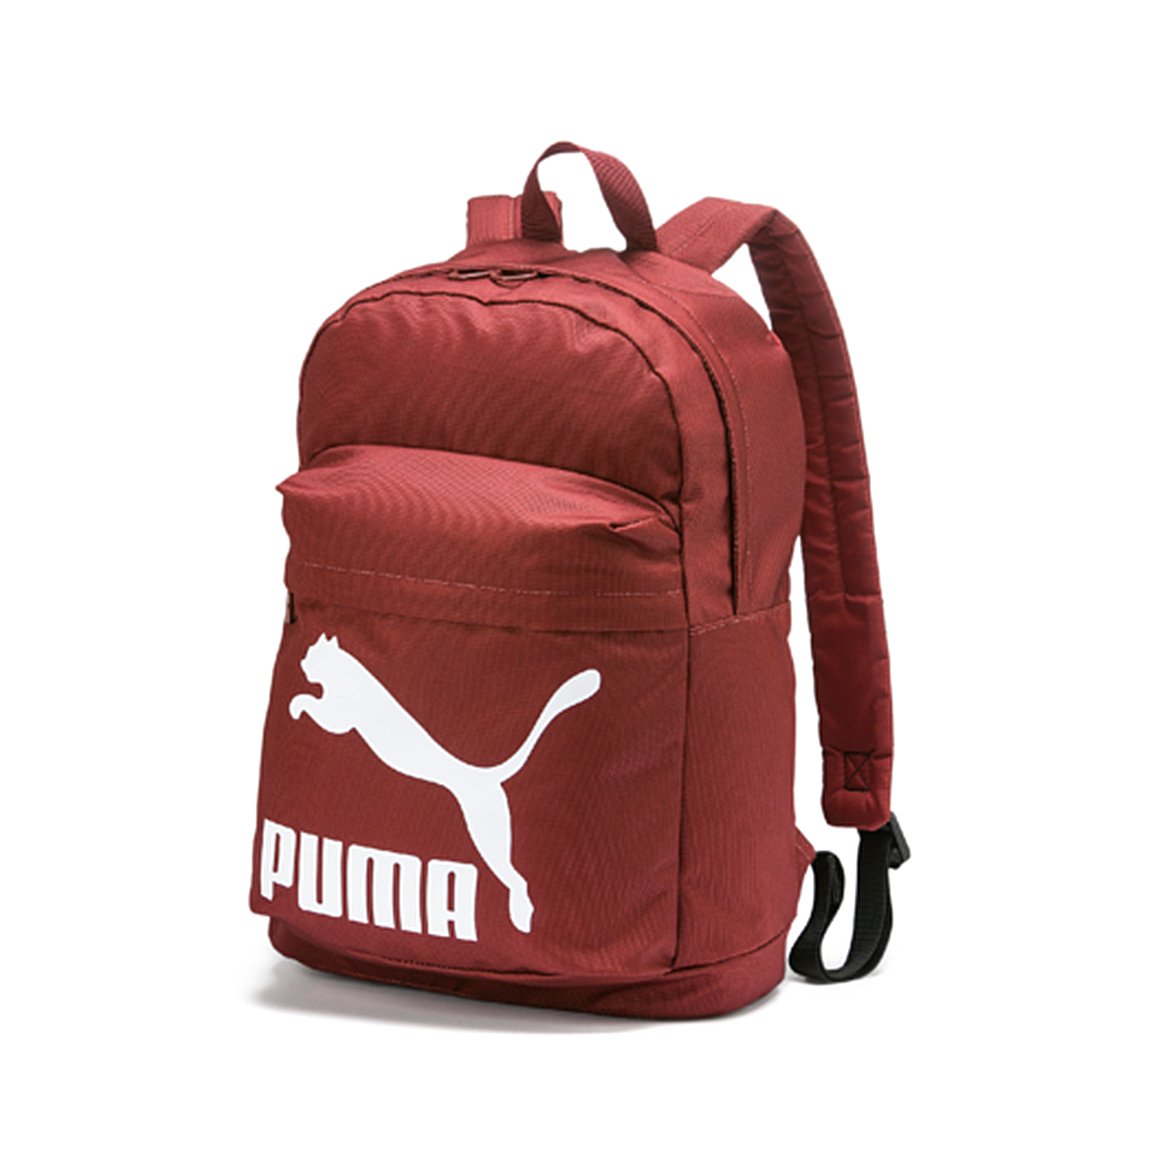 Puma Original 20L Backpack - Red